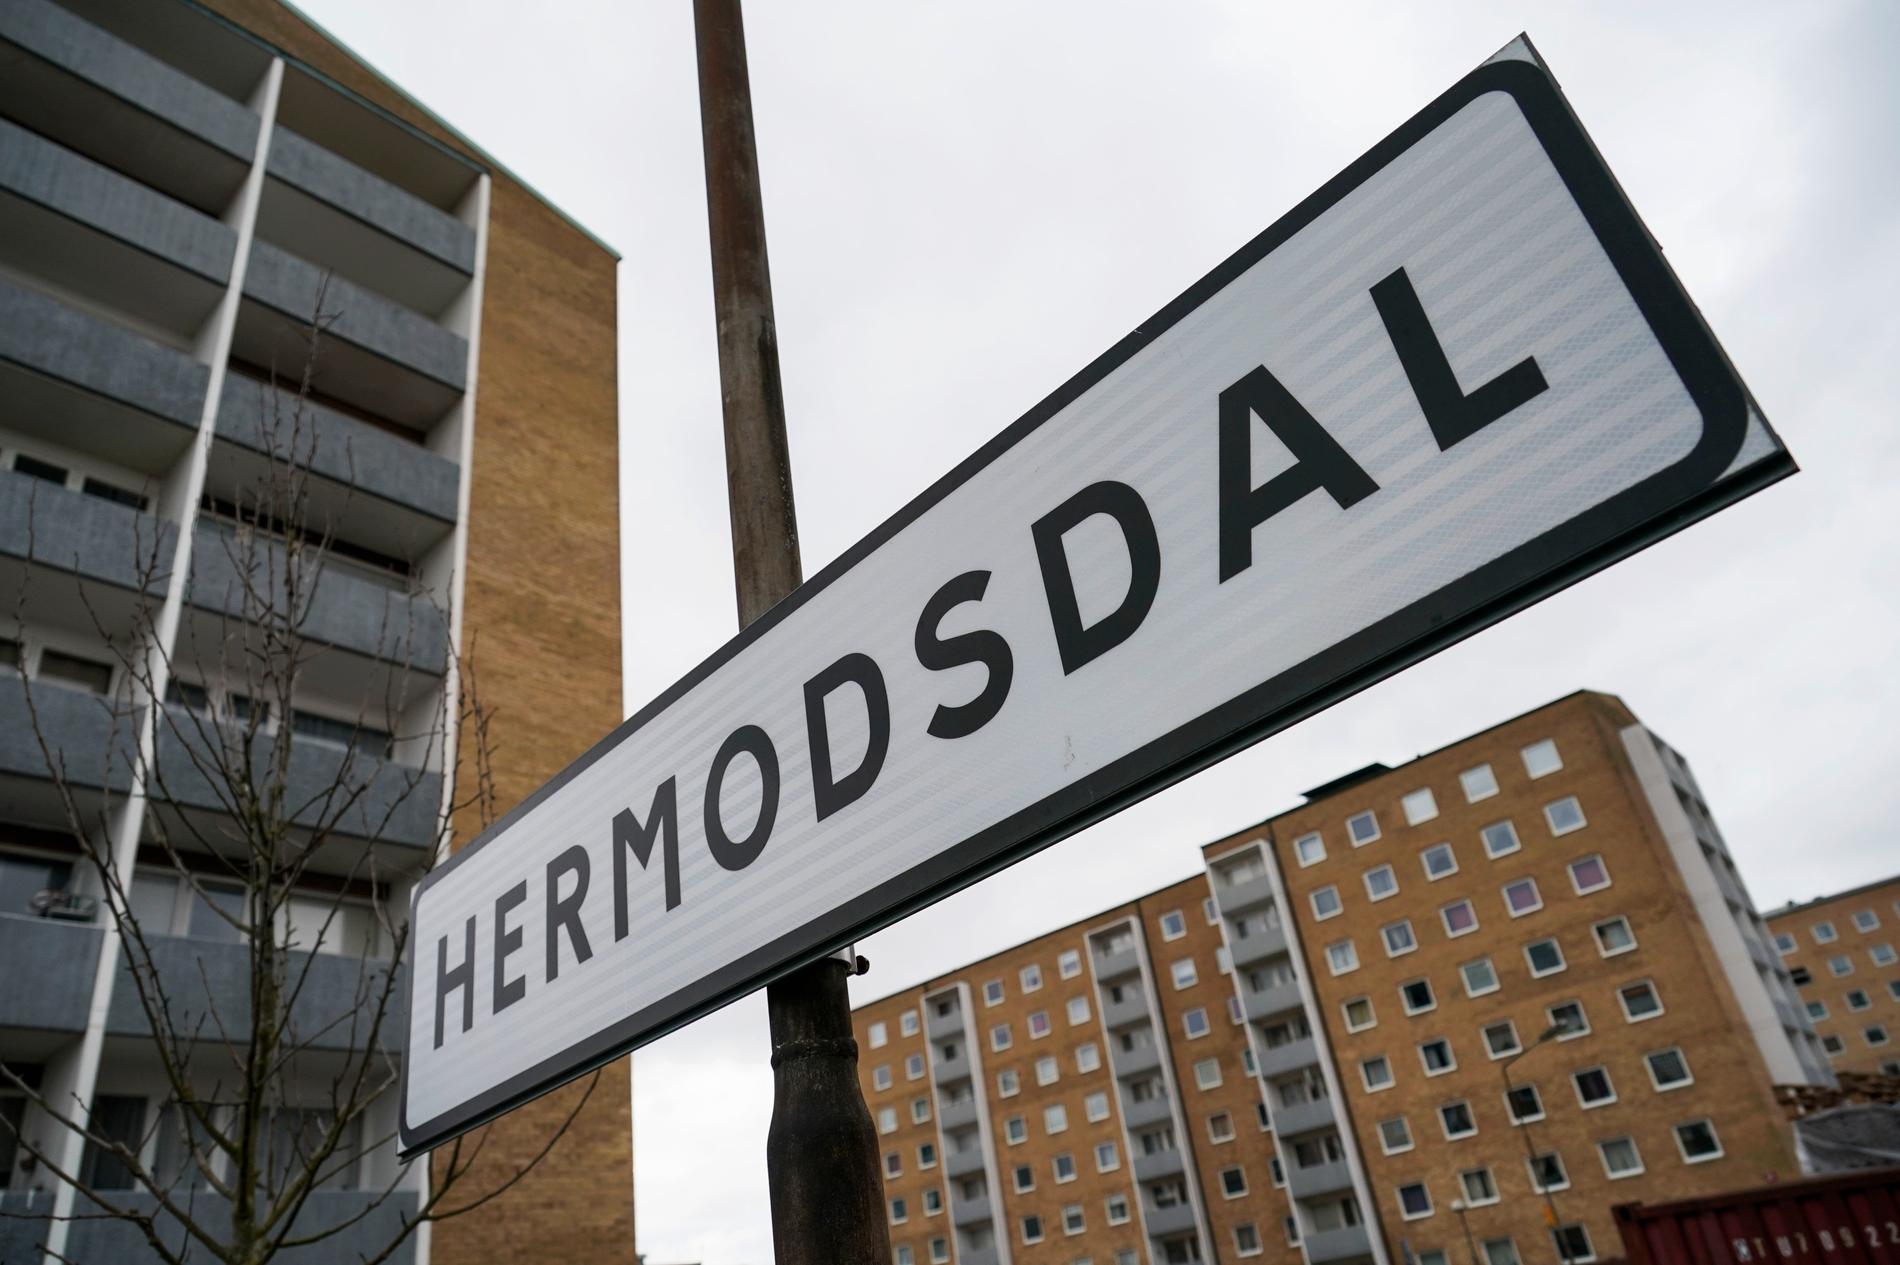 Skarpt sprängmedel hittades i en fastighet på Hermodsdal i Malmö. Arkivbild.